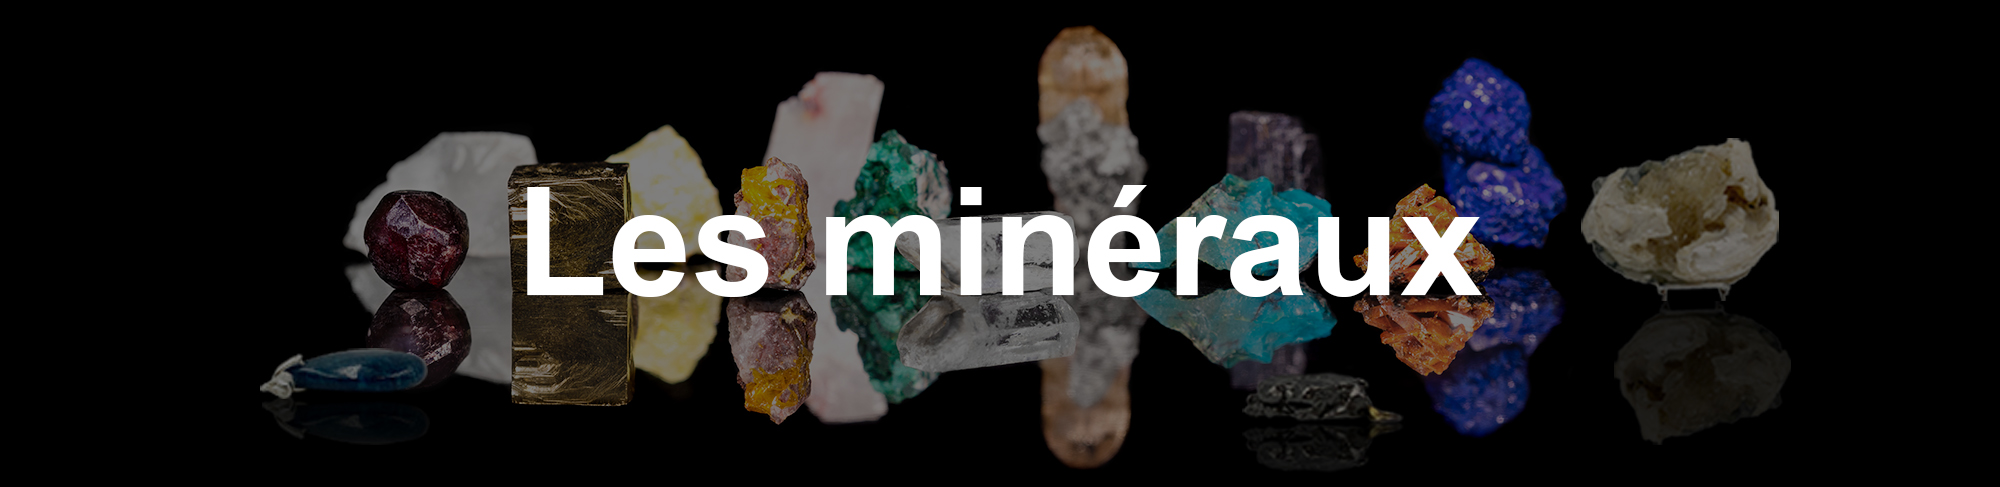 minerama-formation-mineraux